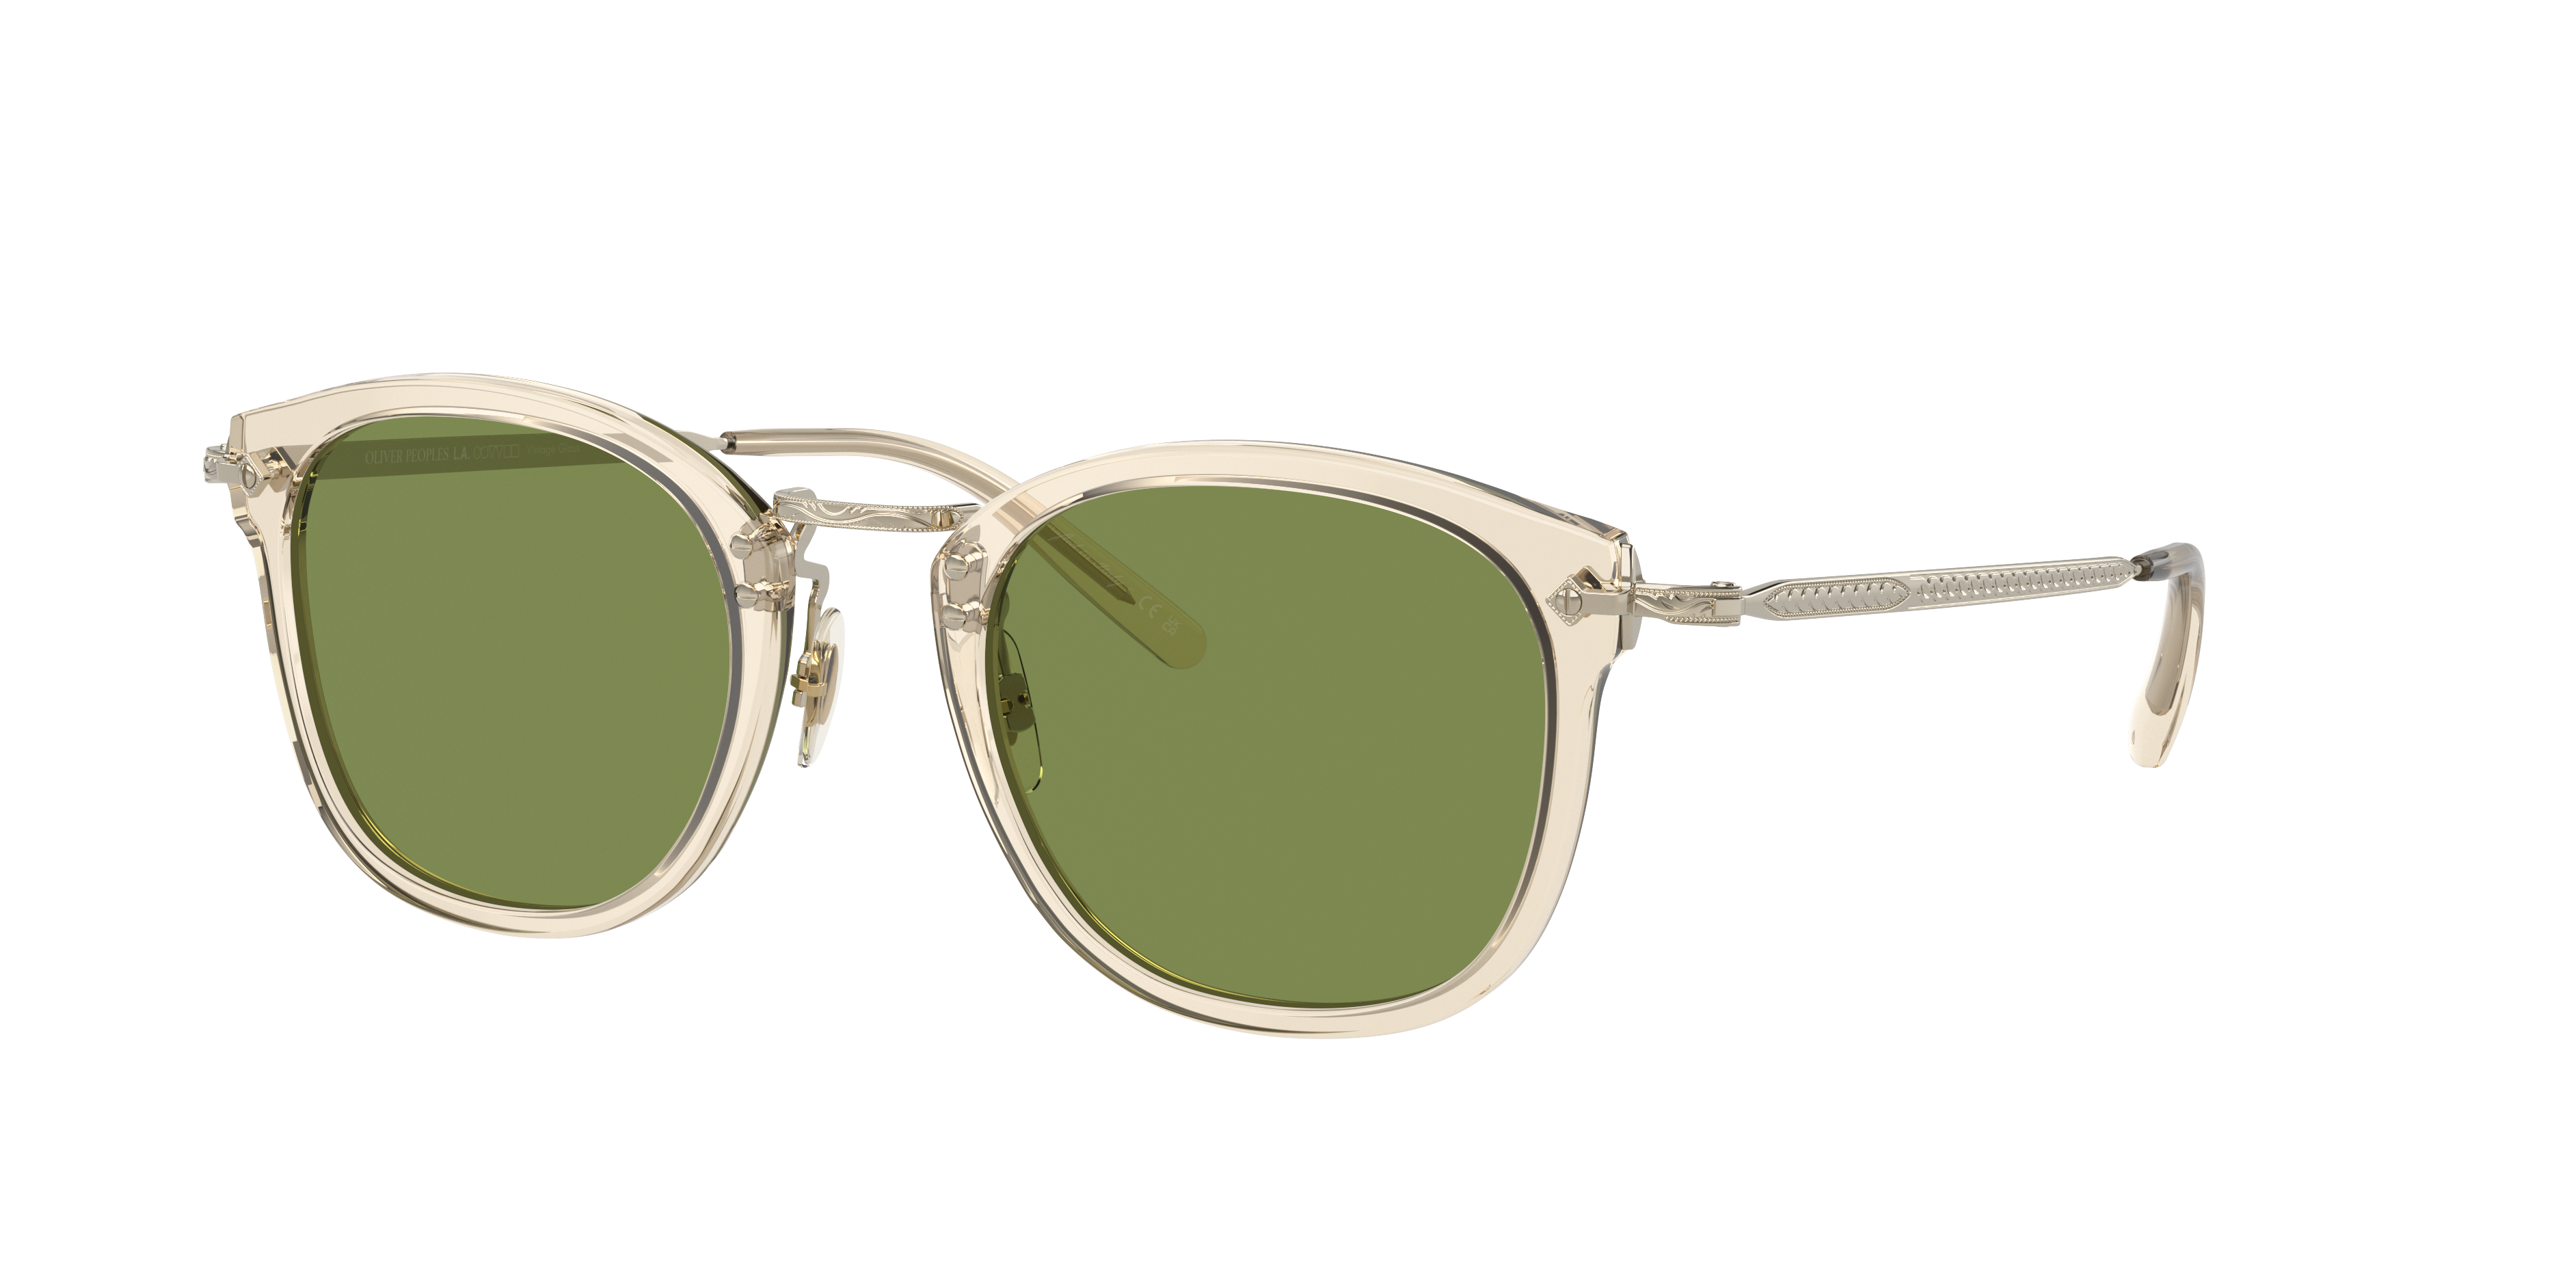 Sunglasses OV5350S - Buff-Gold - Green - アセテート | Oliver 